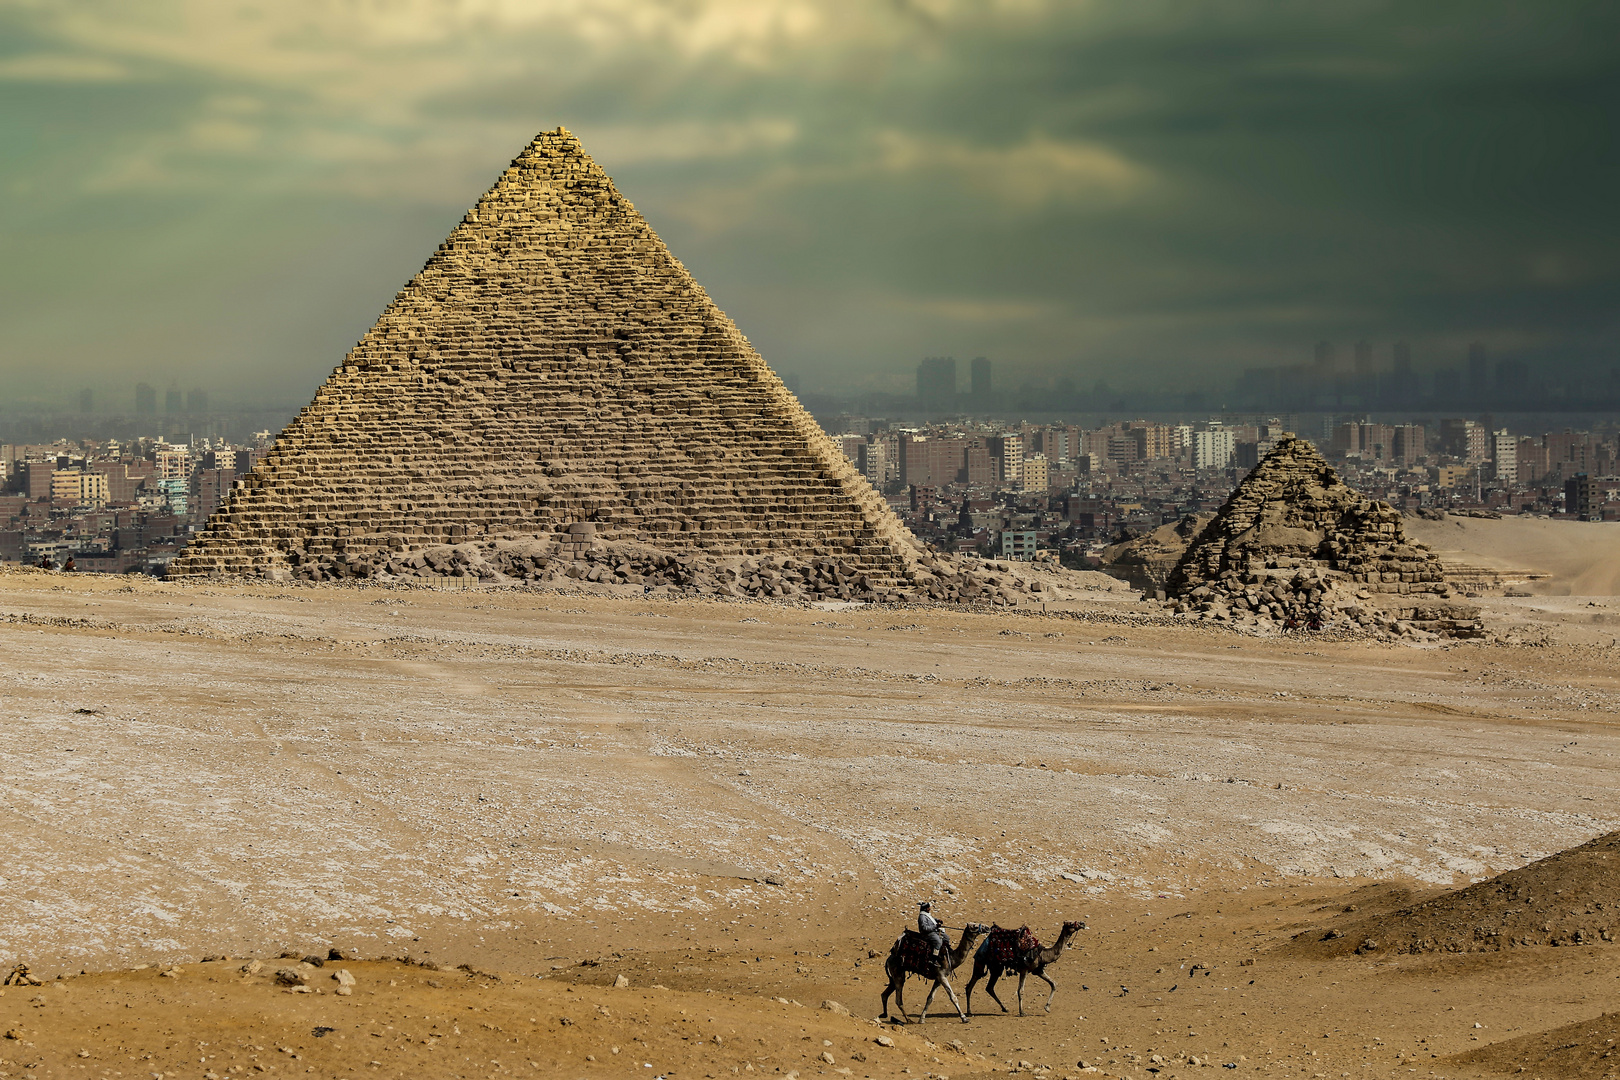 Pyramide von Gizeh